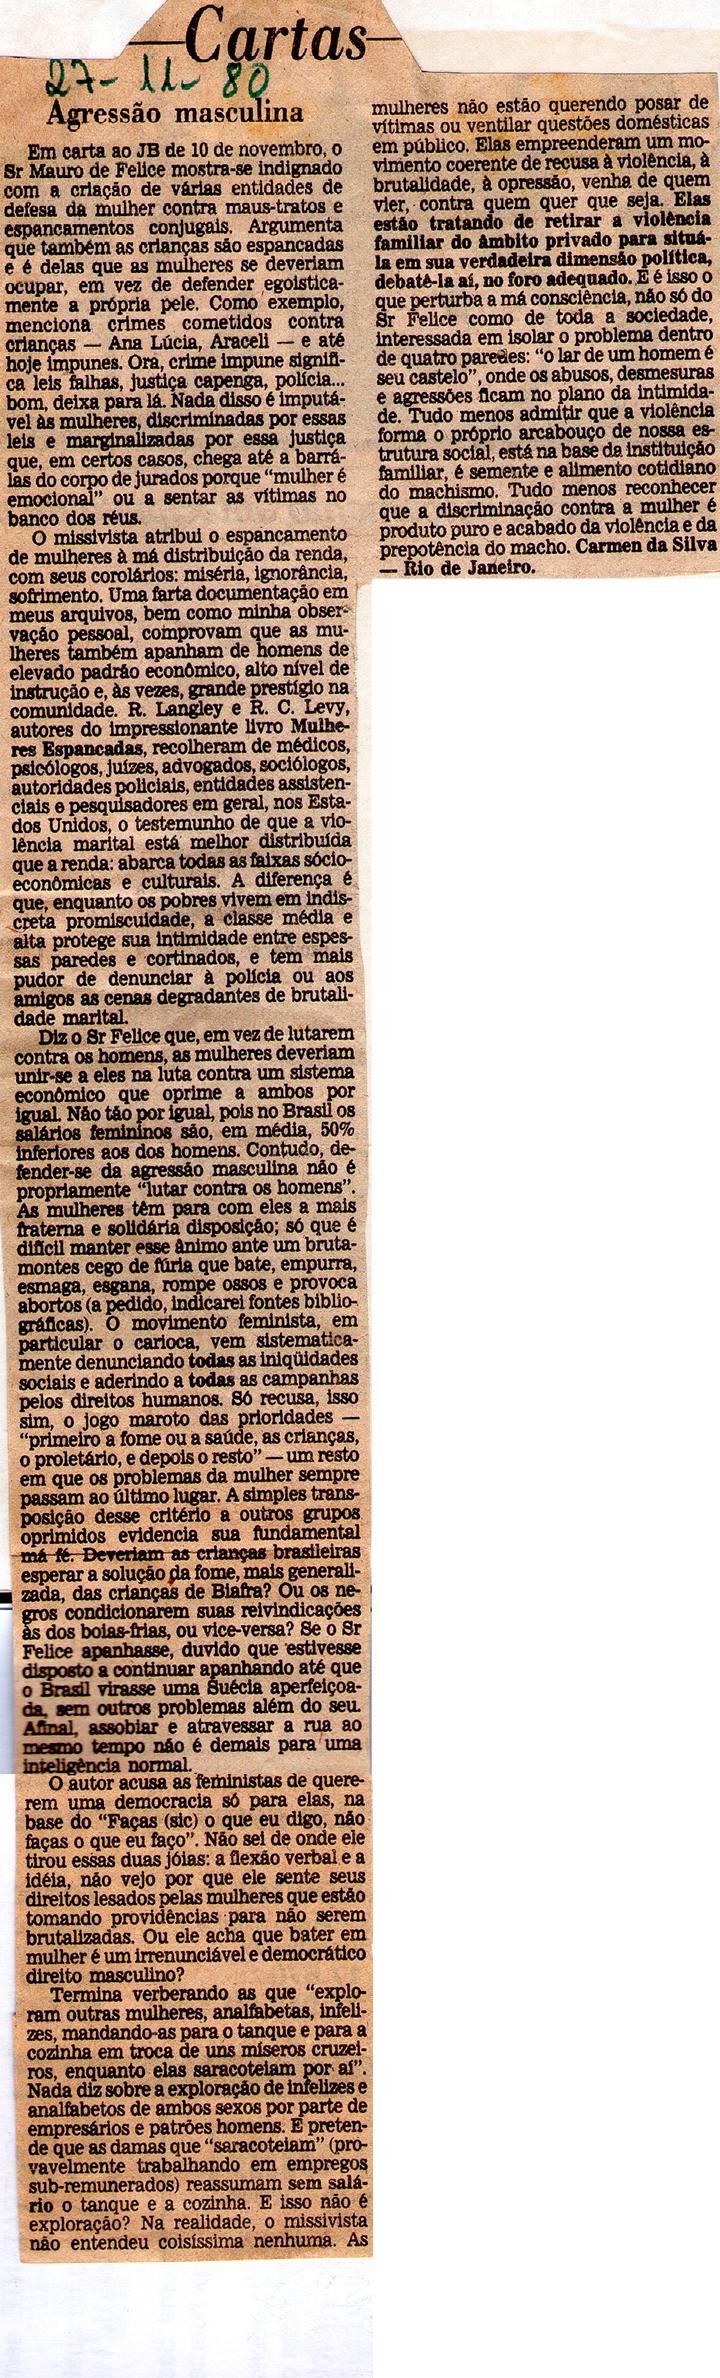 27 de Novembro de 1980 - Jornal do Brasil. Agressão masculina.